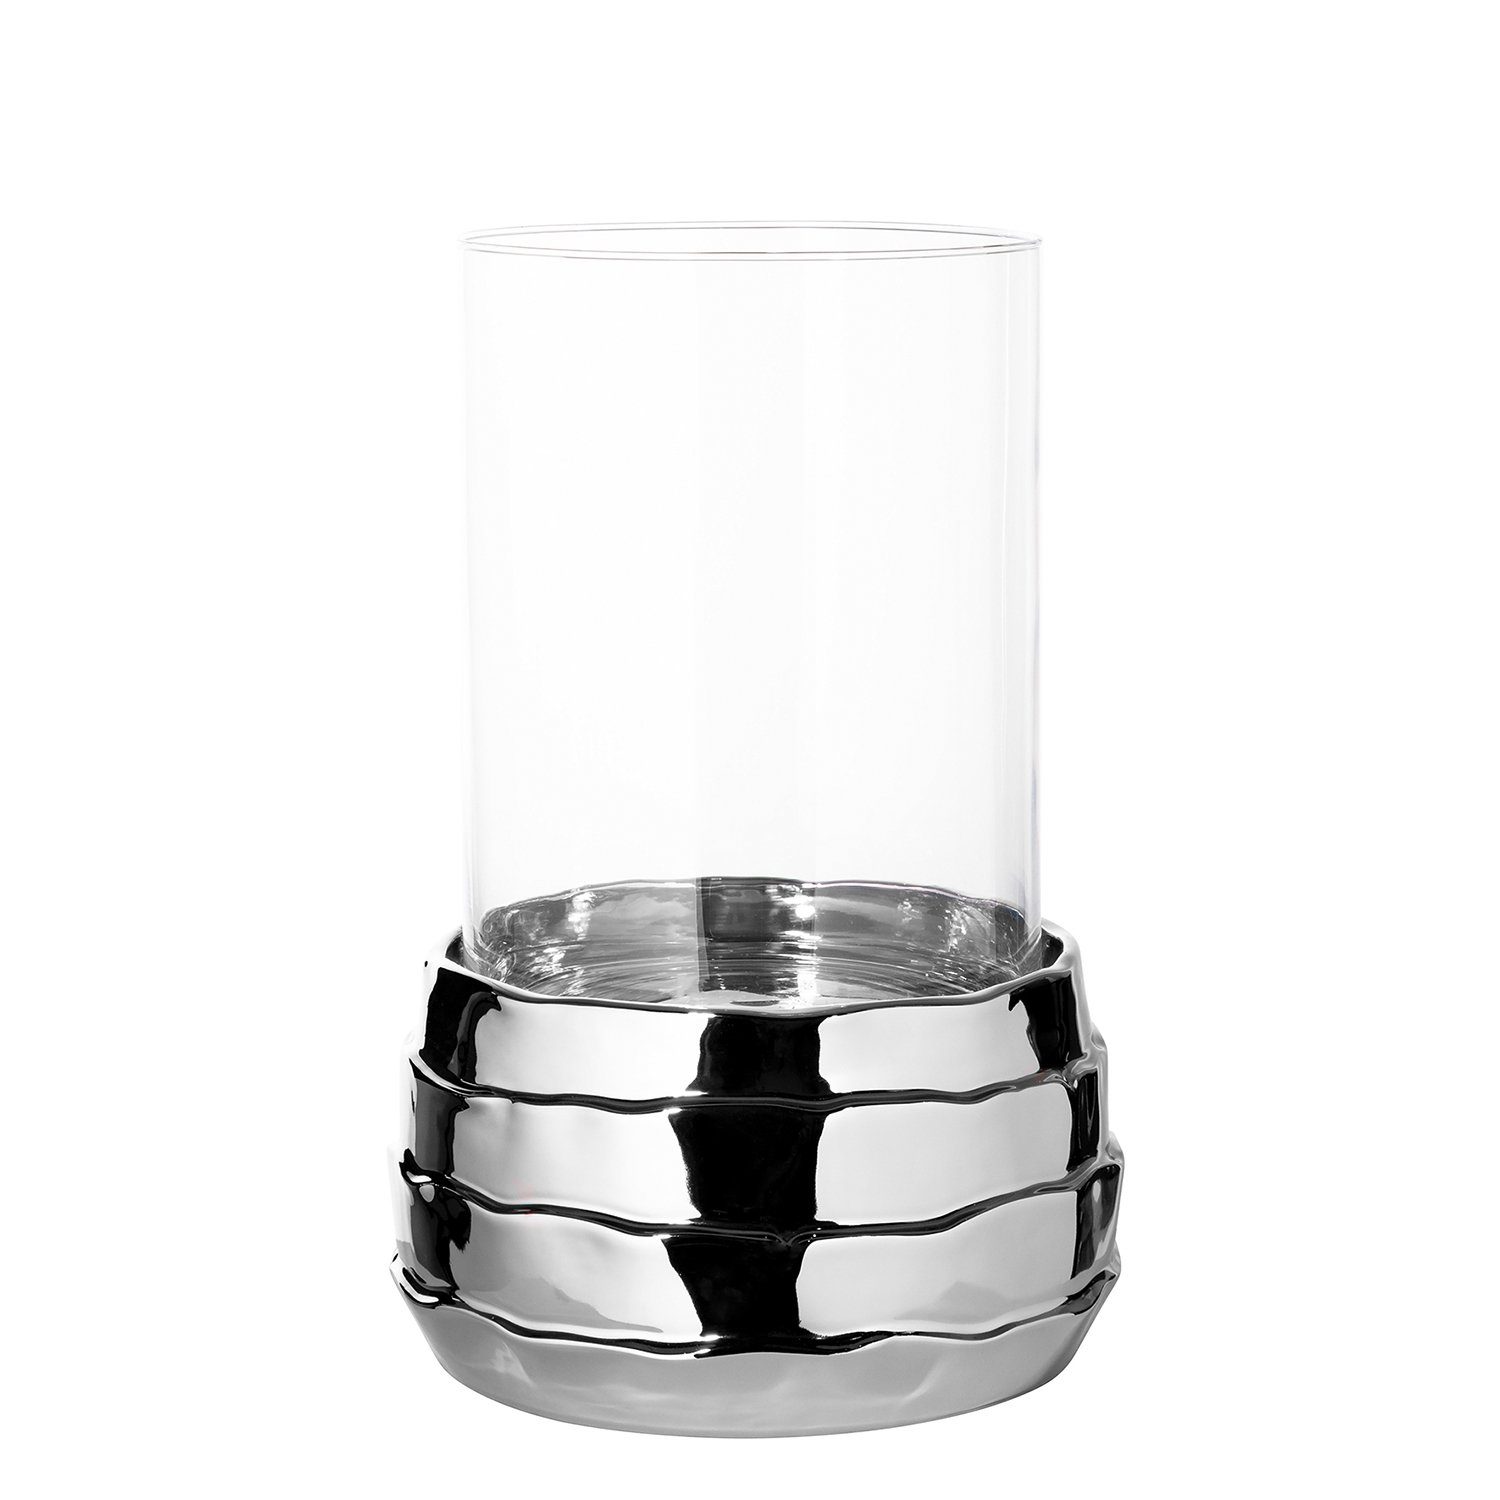 Fink Windlicht - Keramik - Glas nicht (Keramikbasis 25cm COCON H.34cm - Ø + silberfarben outdoorgeeignet Glas), Windlicht x 